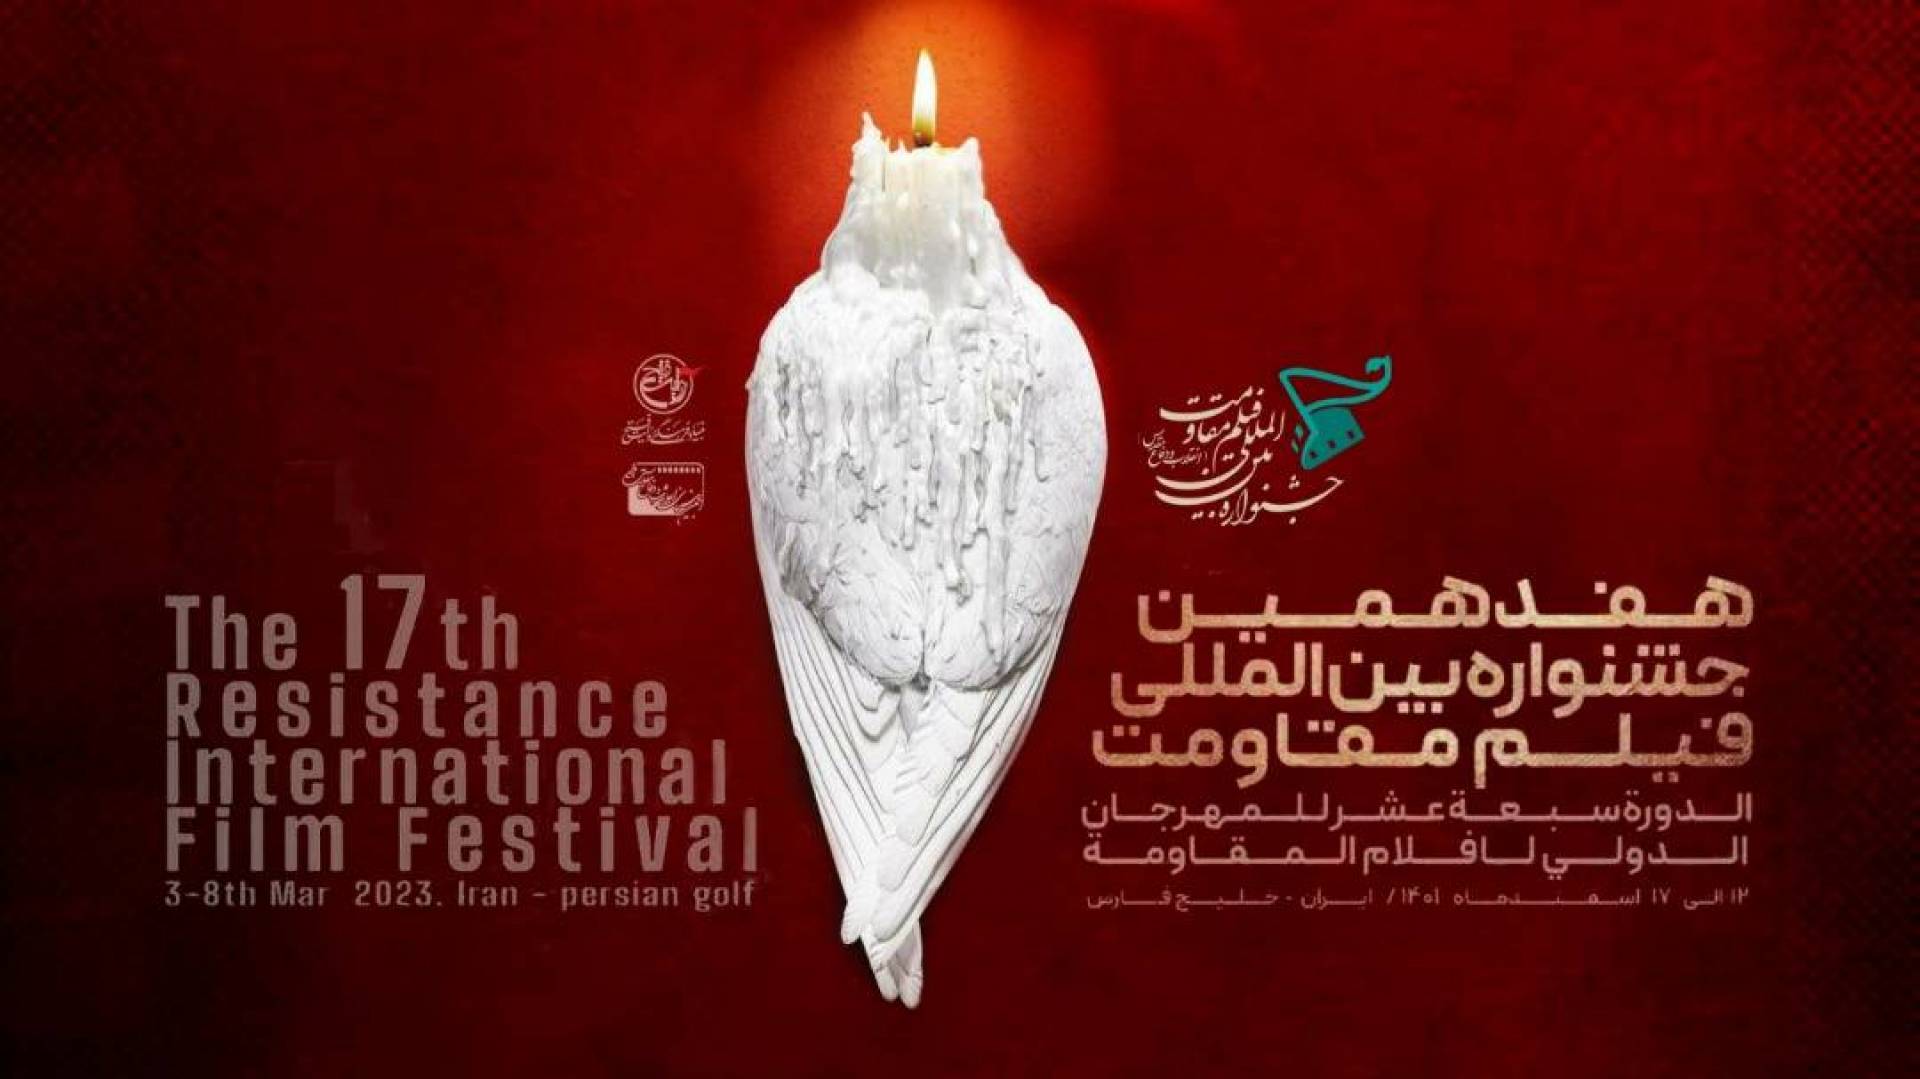 إعلان مهرجان أفلام المقاومة الدولي بدورته الـ17